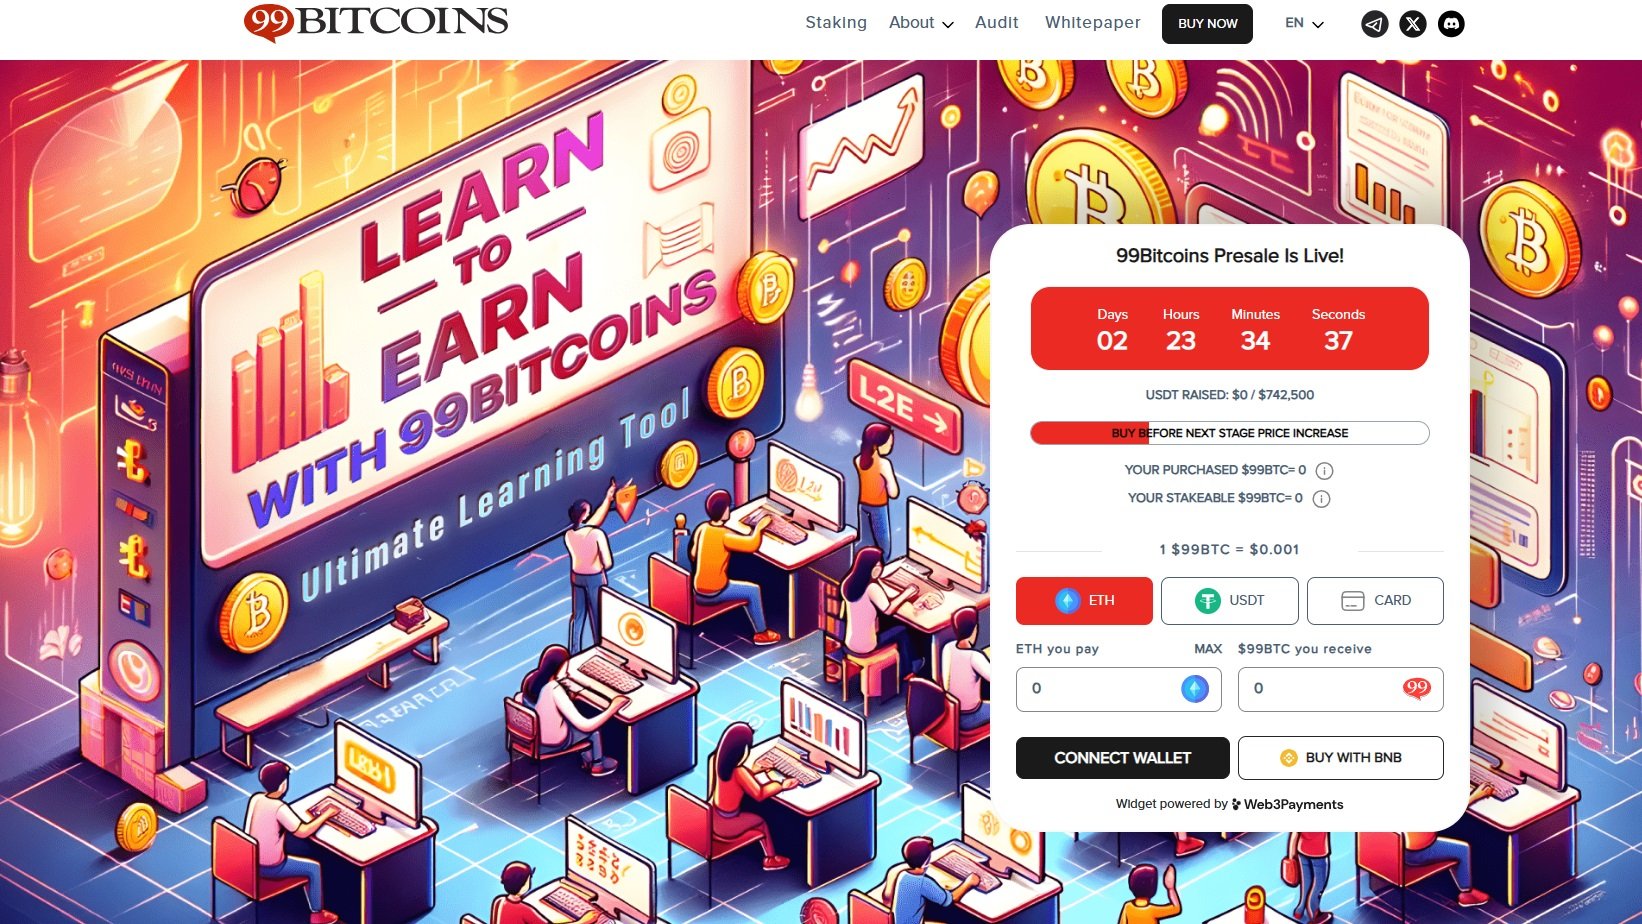 Předprodej projektu 99Bitcoins, jehož studenti mohou získat kryptoměny zdarma